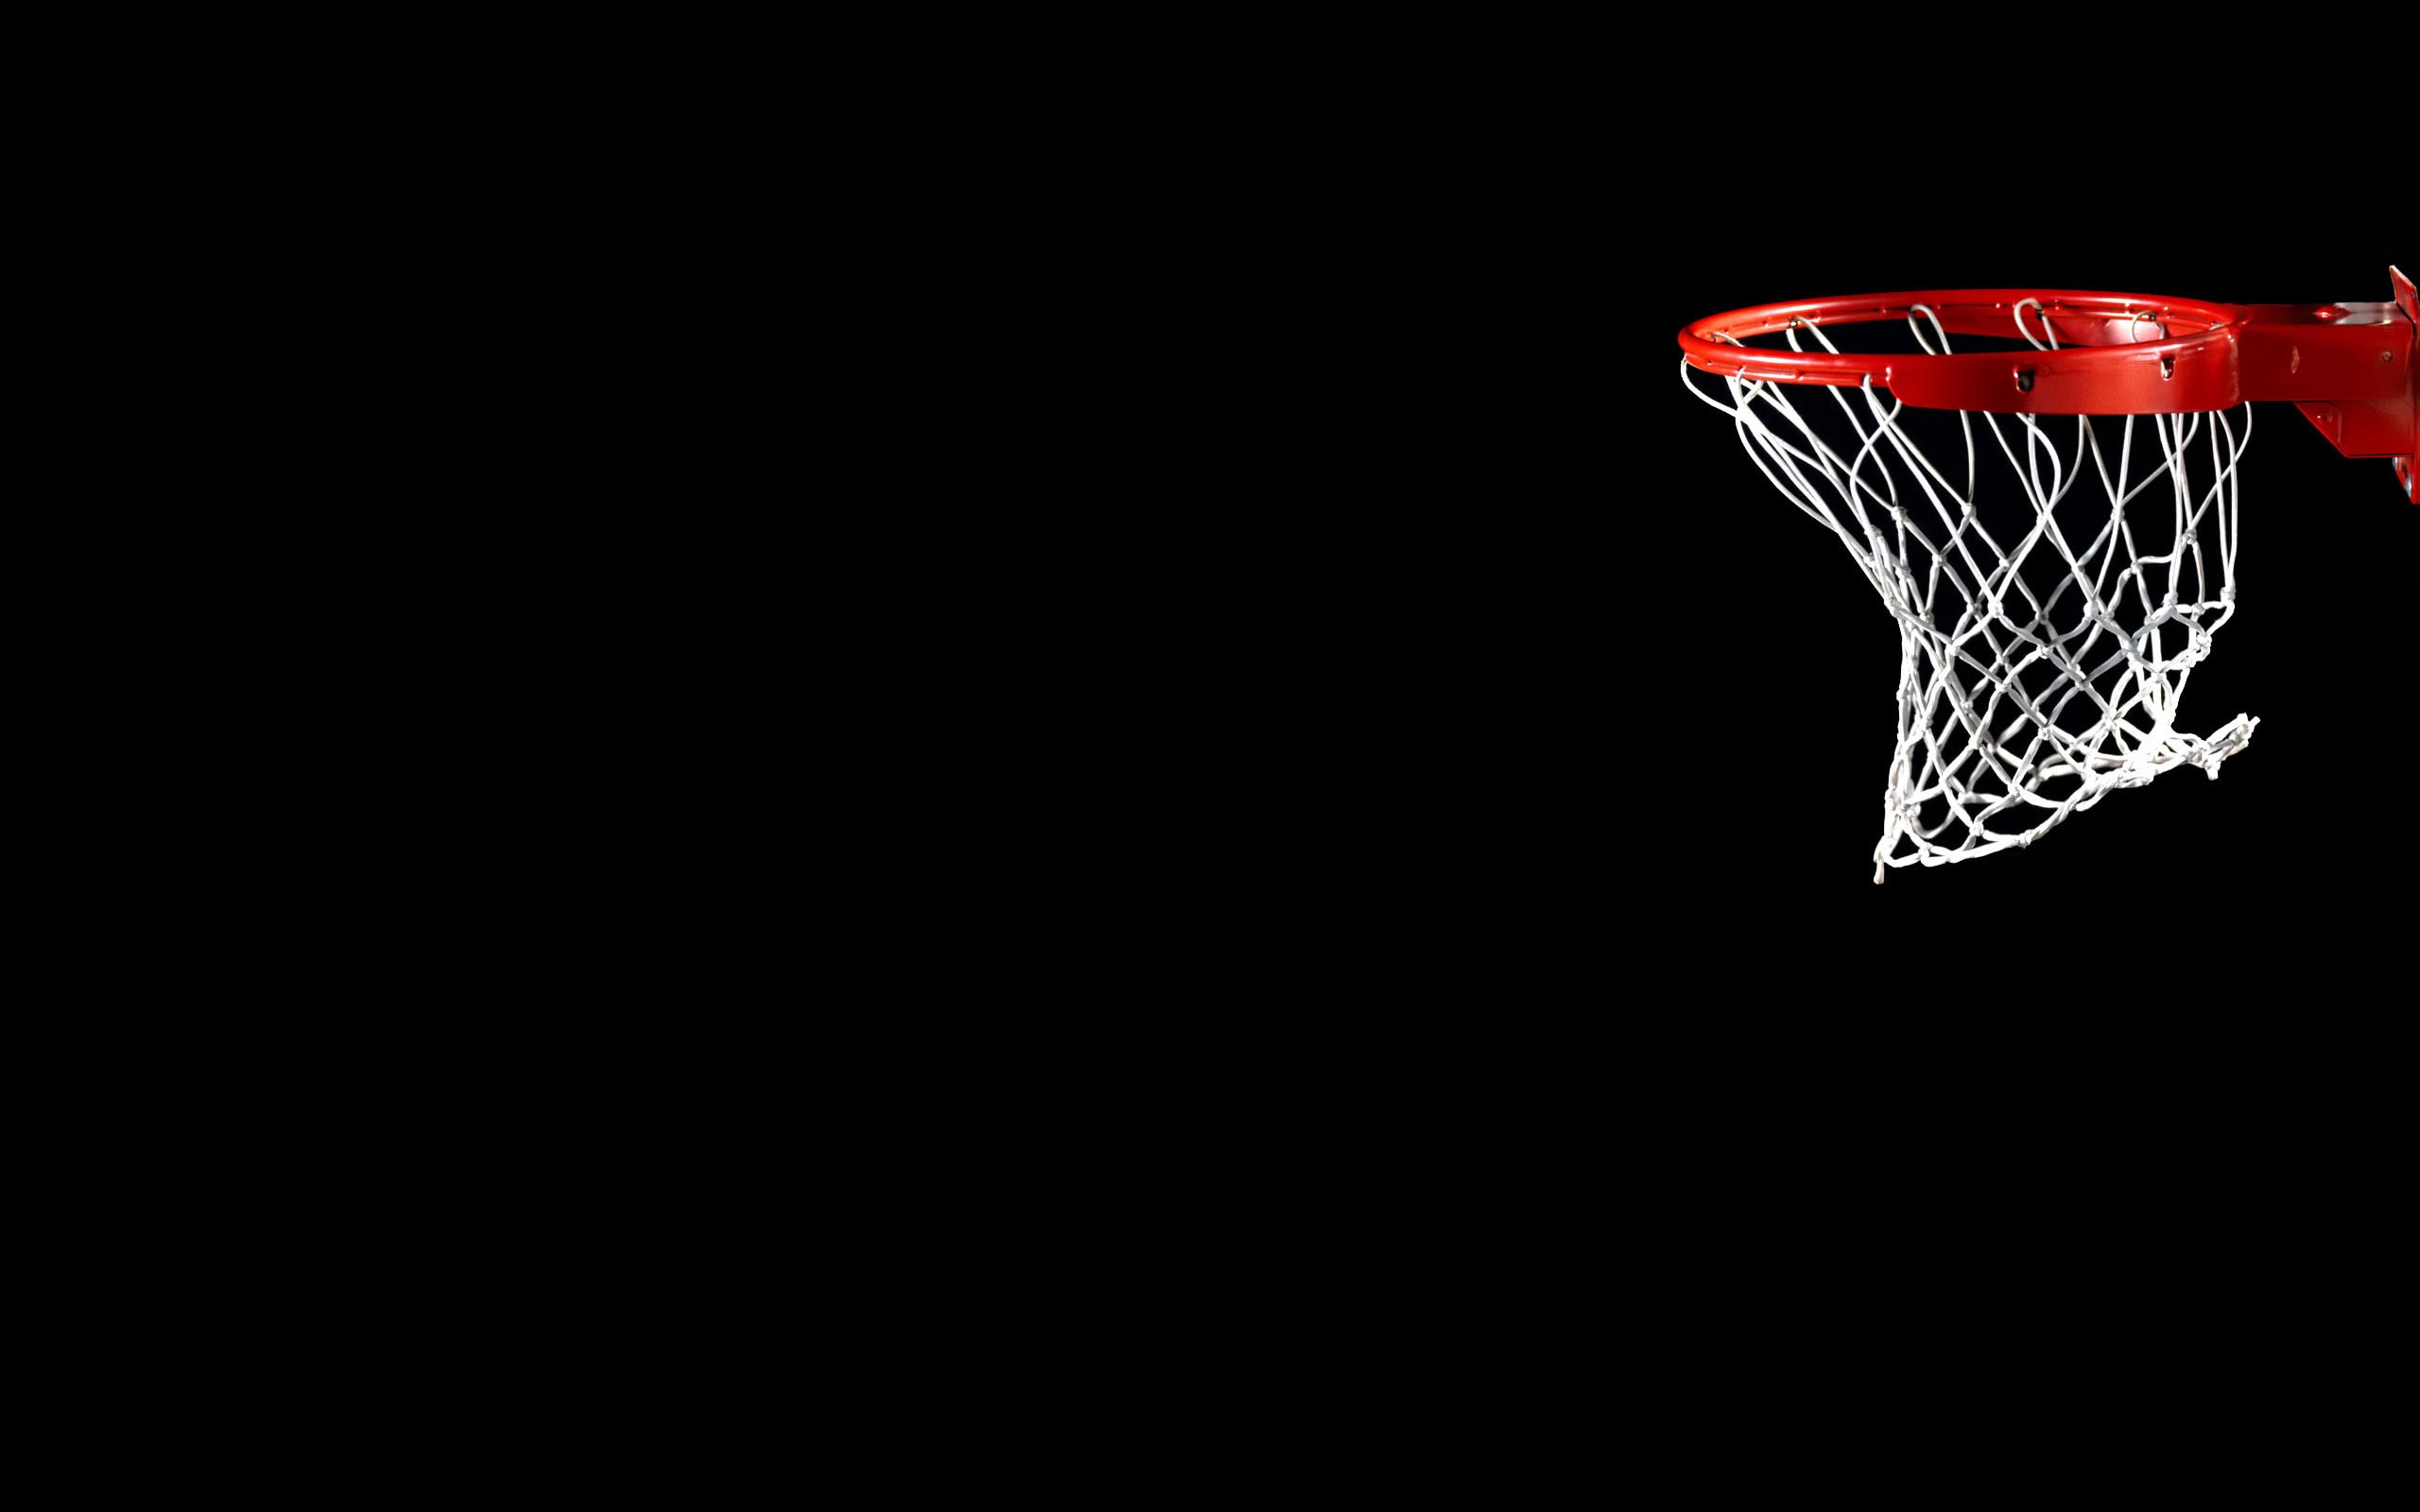 Download Basketball Hoop Wallpaper 8922 2560x1600 px High resolution